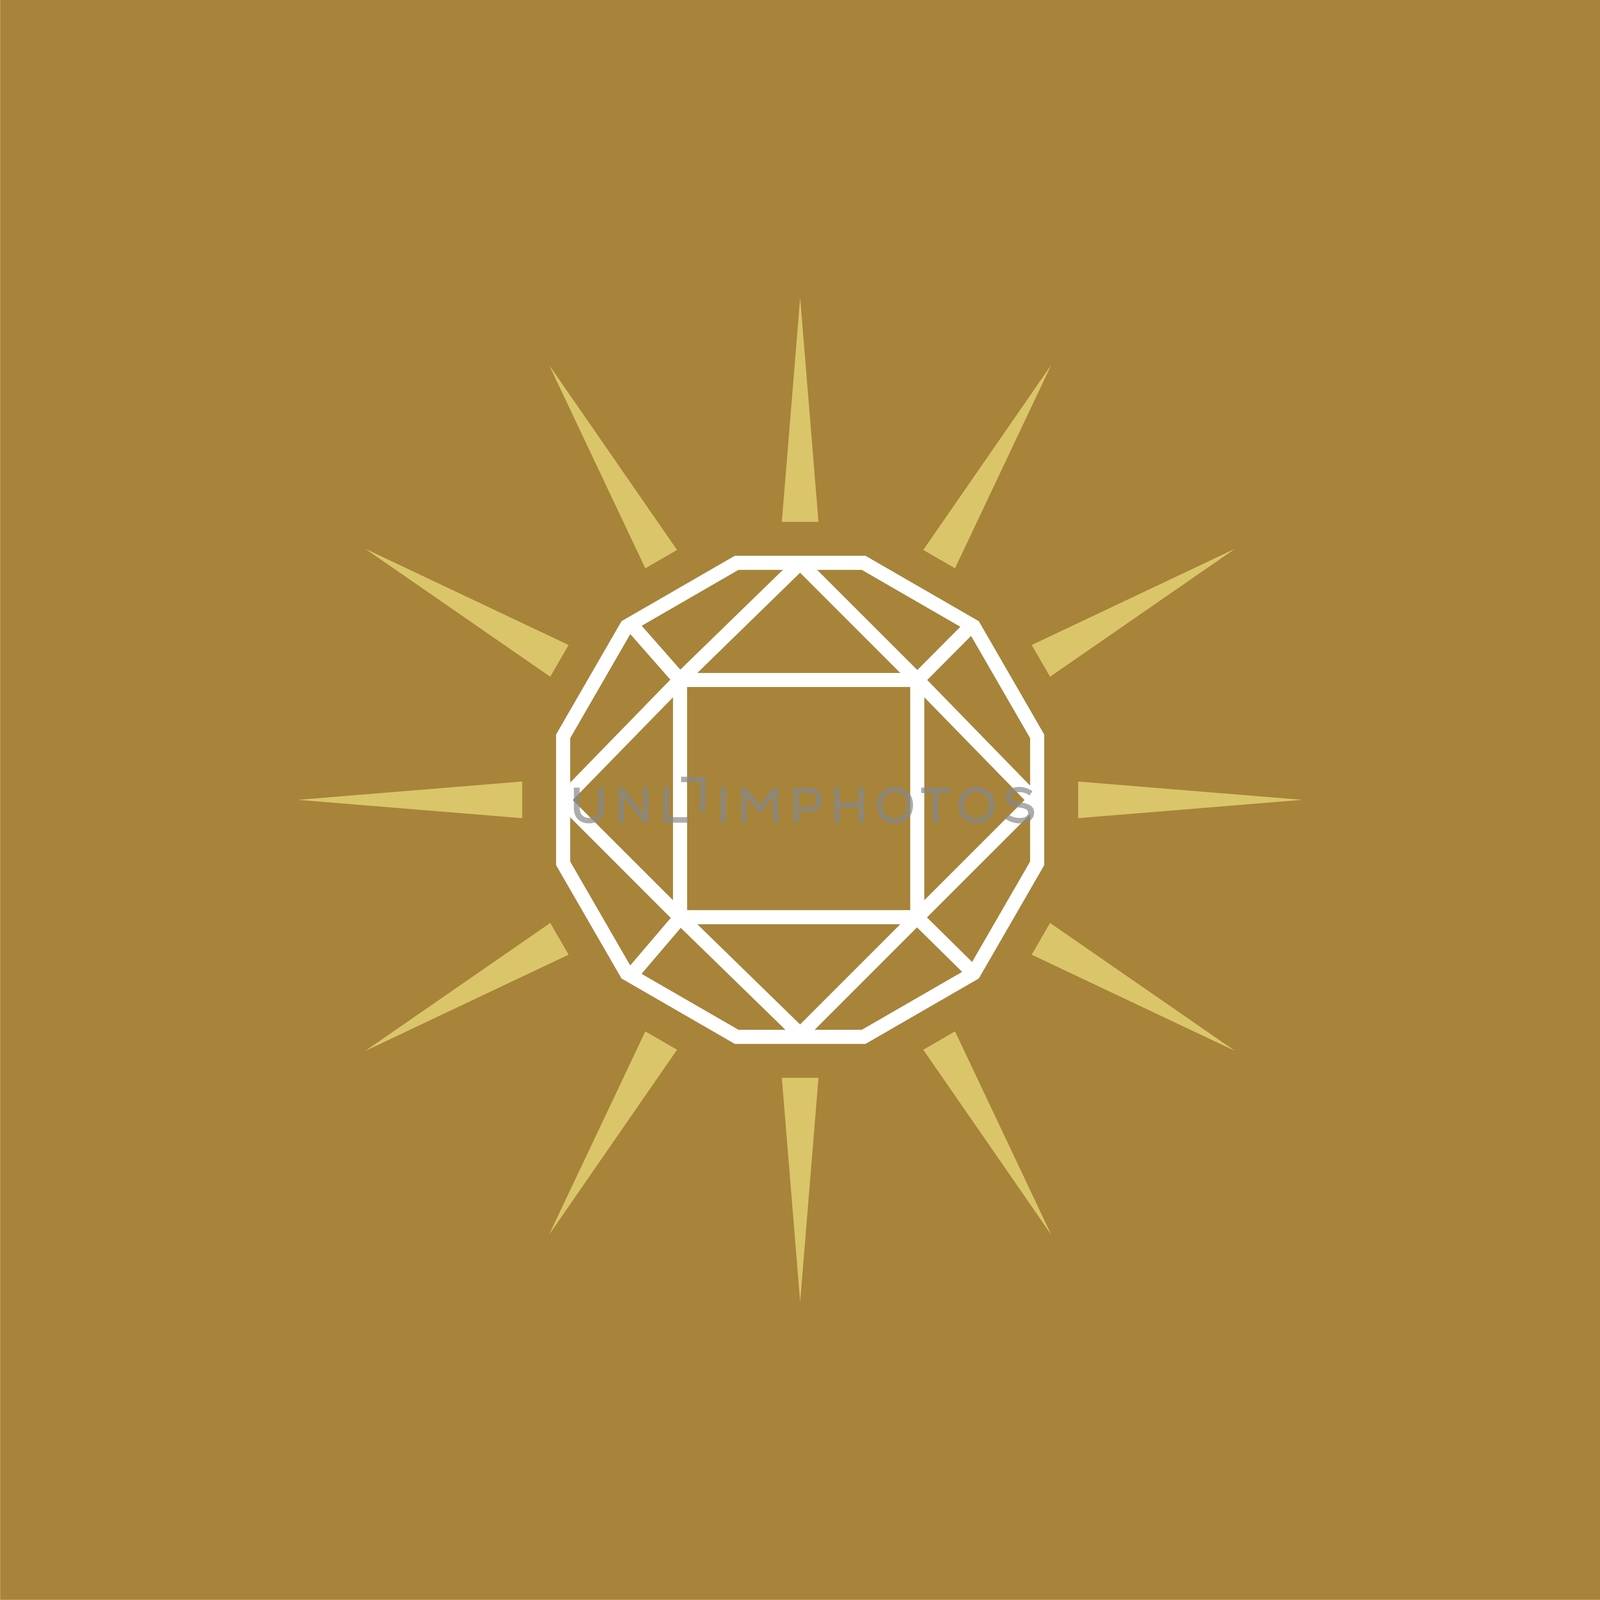 Diamond Logo Template icon vector logo template Illustration Design. Vector EPS 10.